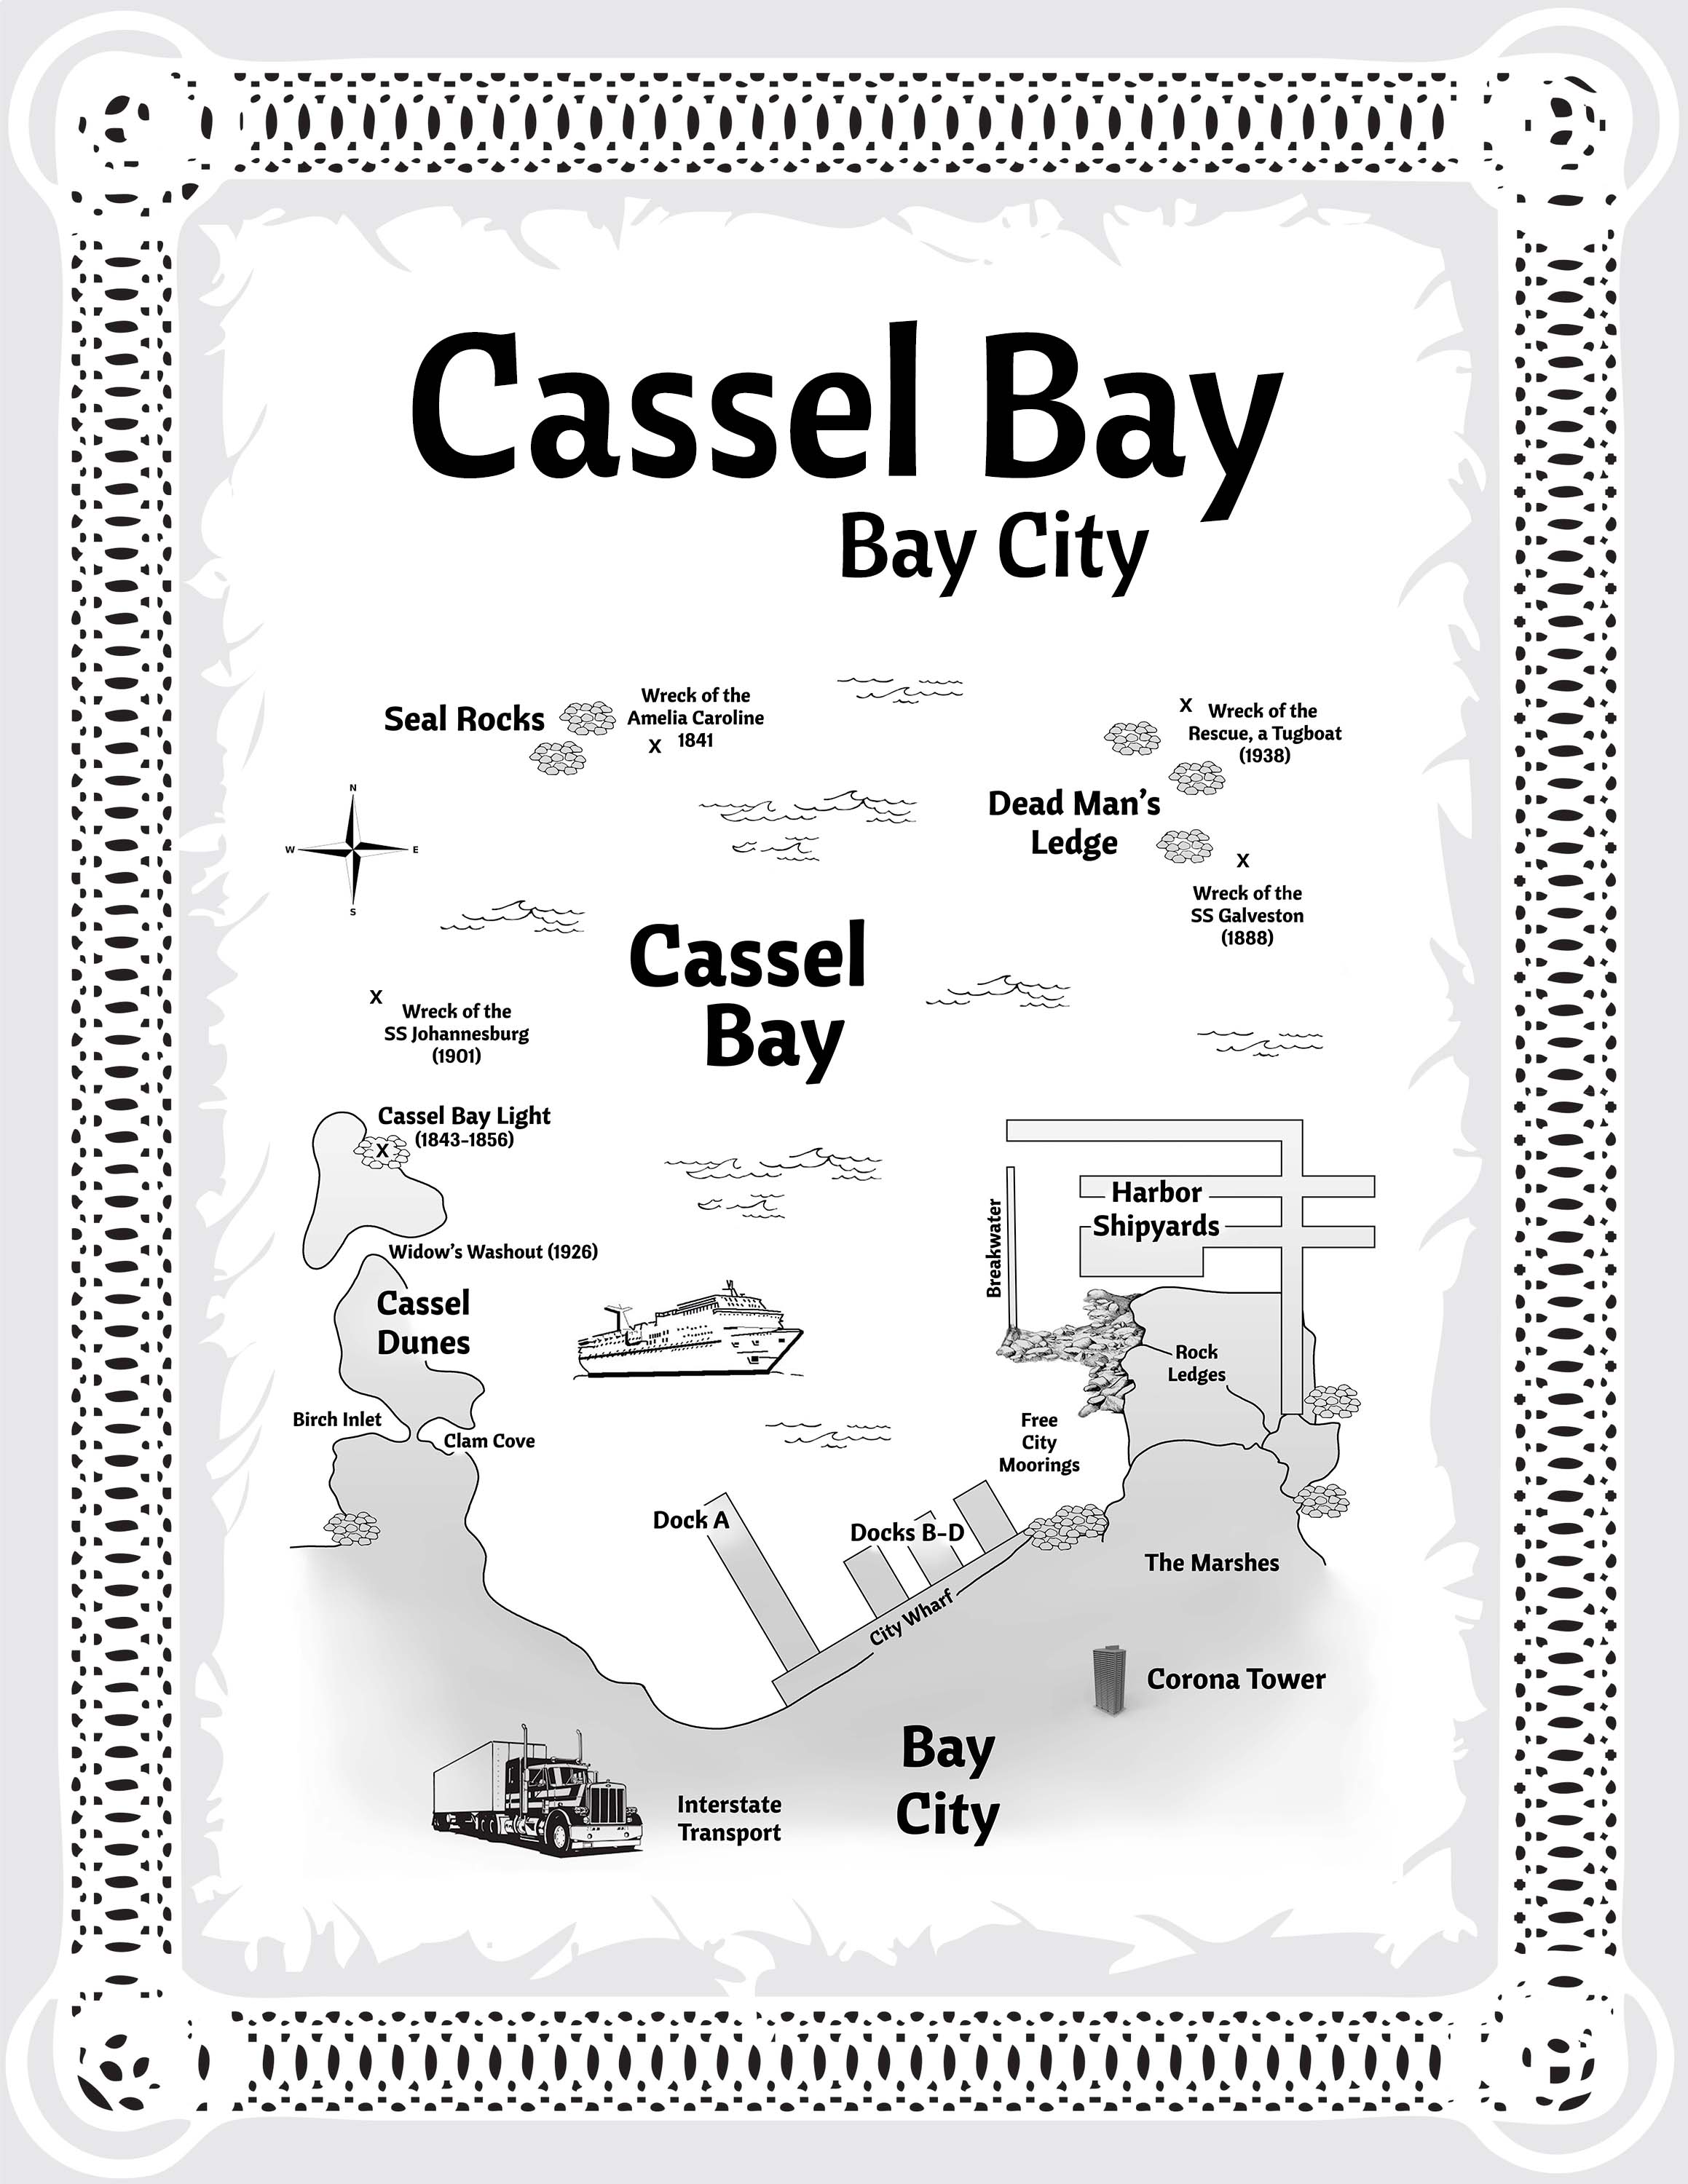 Bay City Cassel Bay